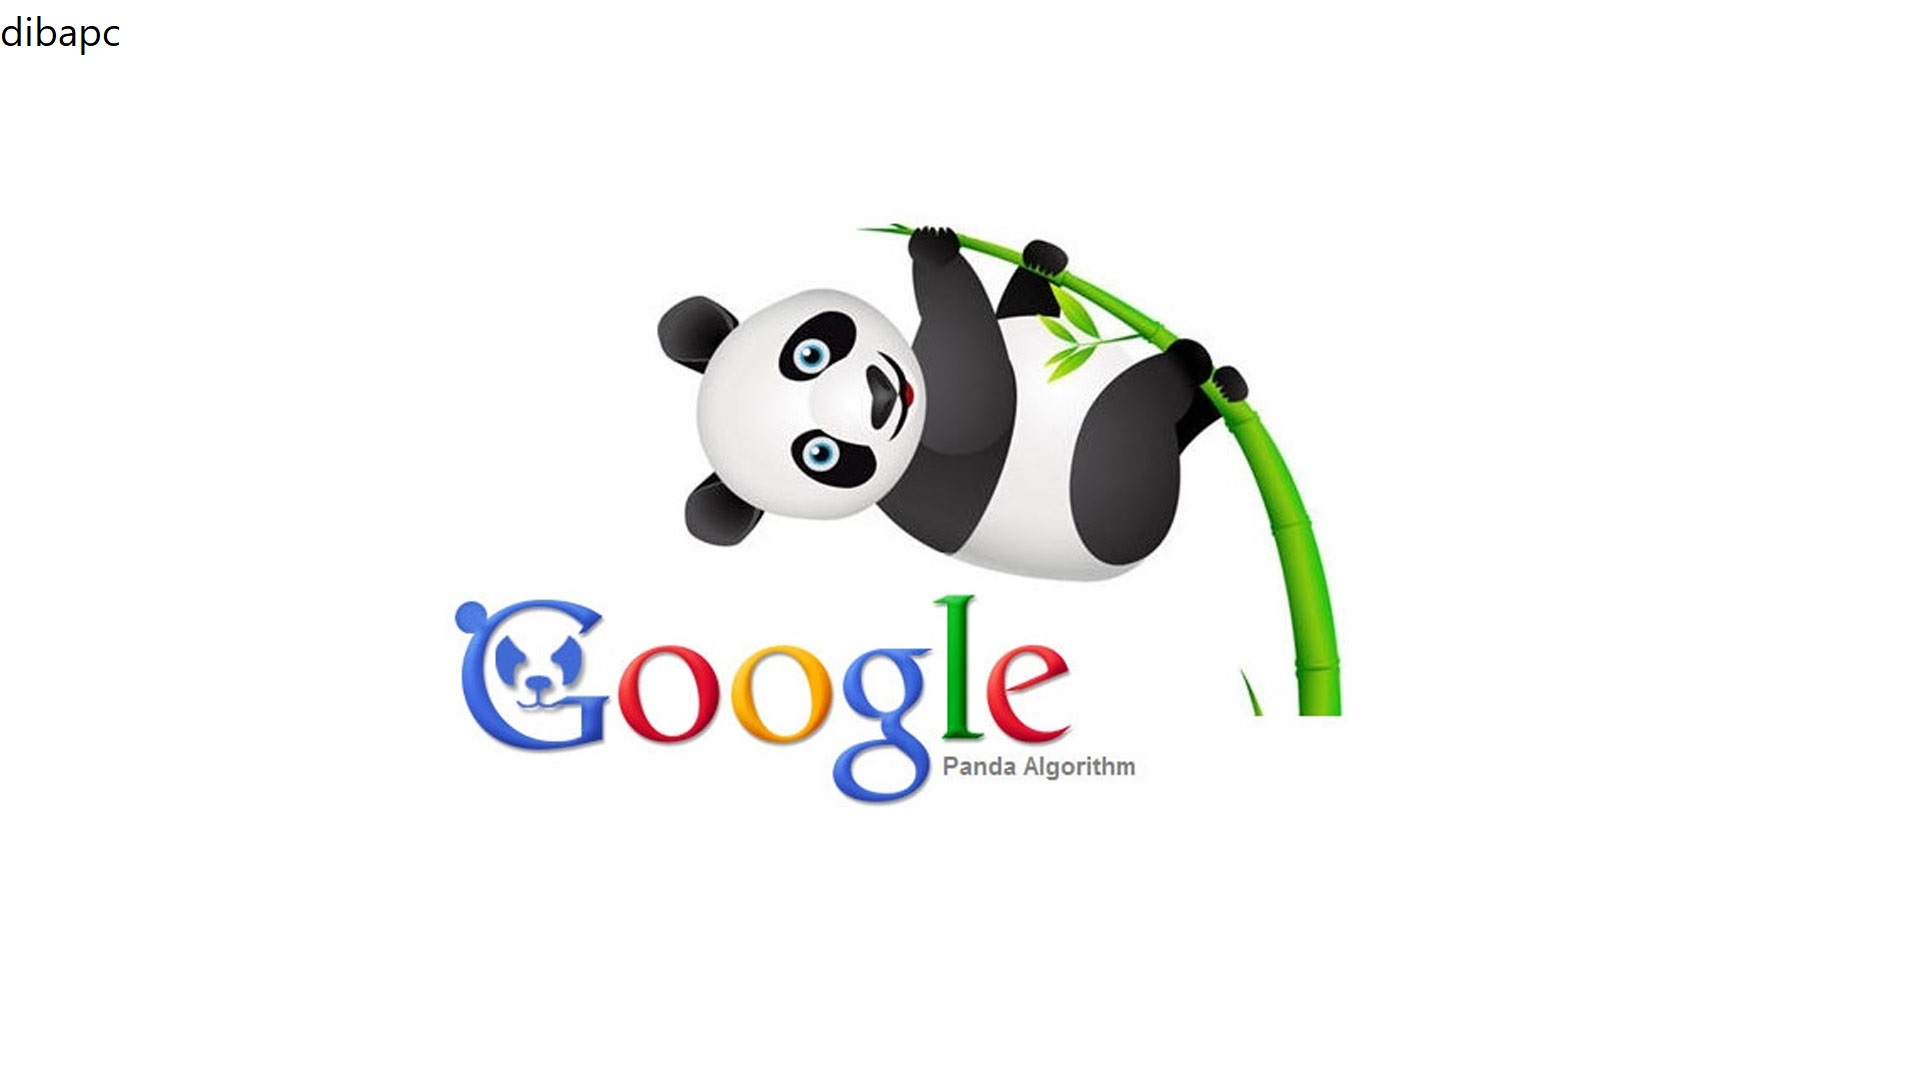 مهم ترین علت ایجاد الگوریتم الگوریتم پاندا گوگل (Panda Algorithm)چیست؟